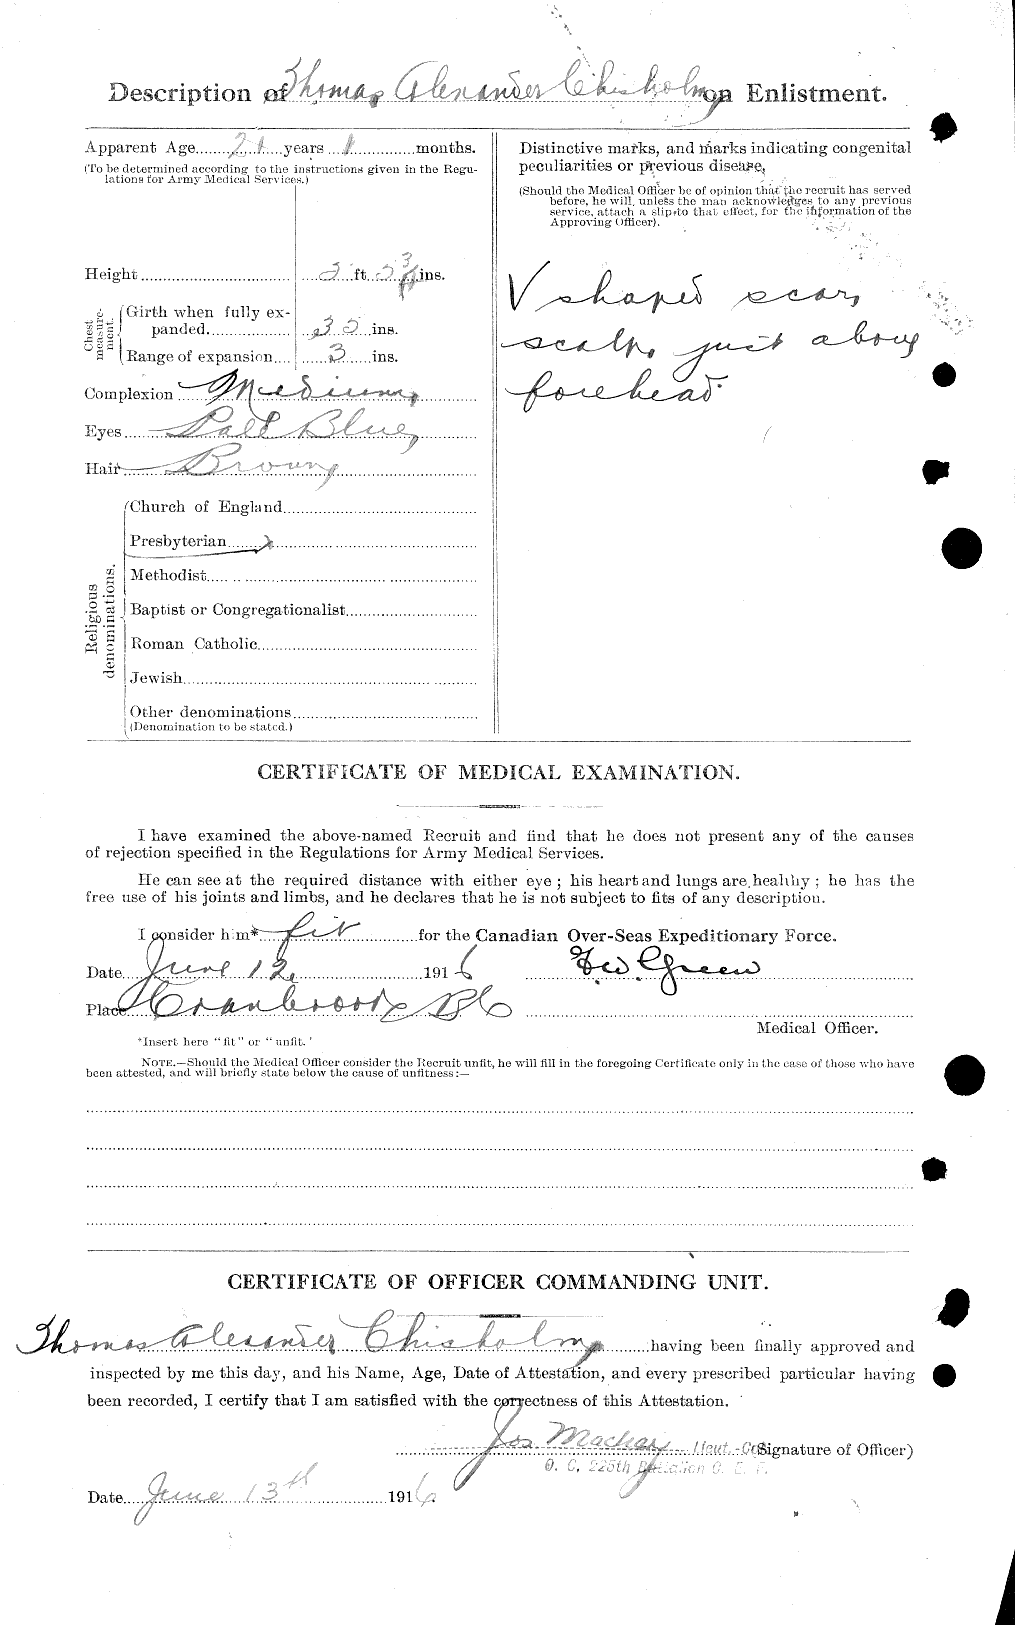 Dossiers du Personnel de la Première Guerre mondiale - CEC 018375b